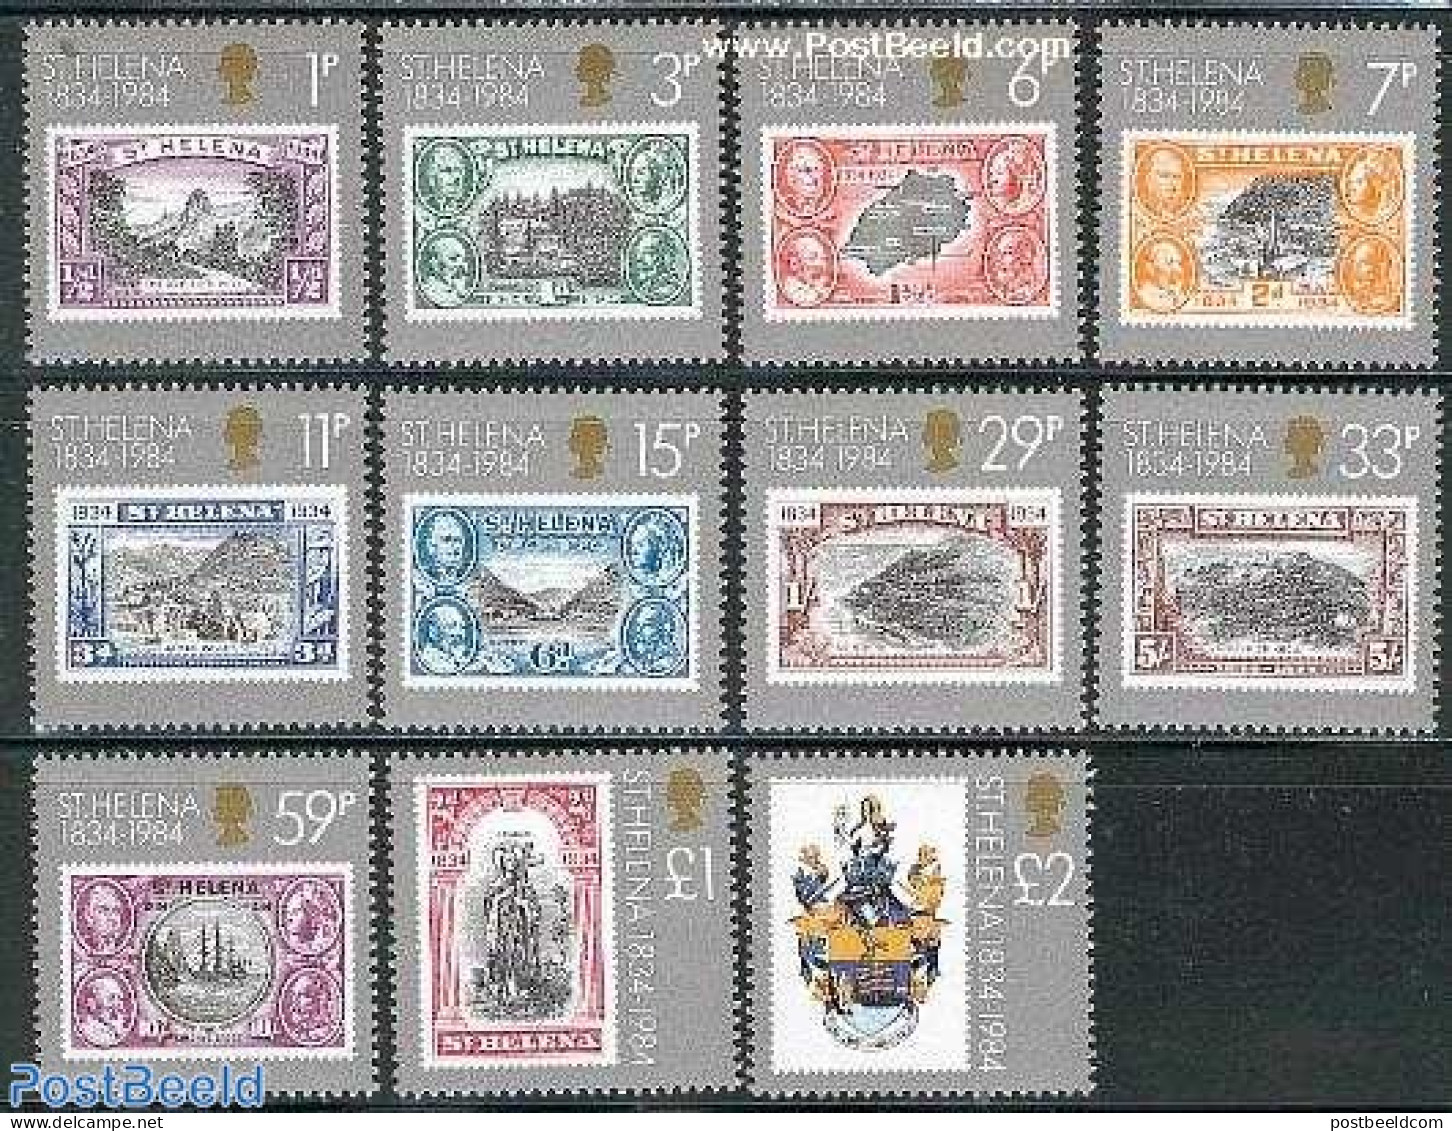 Saint Helena 1984 Colony 150th Anniversary 11v, Mint NH, Stamps On Stamps - Briefmarken Auf Briefmarken